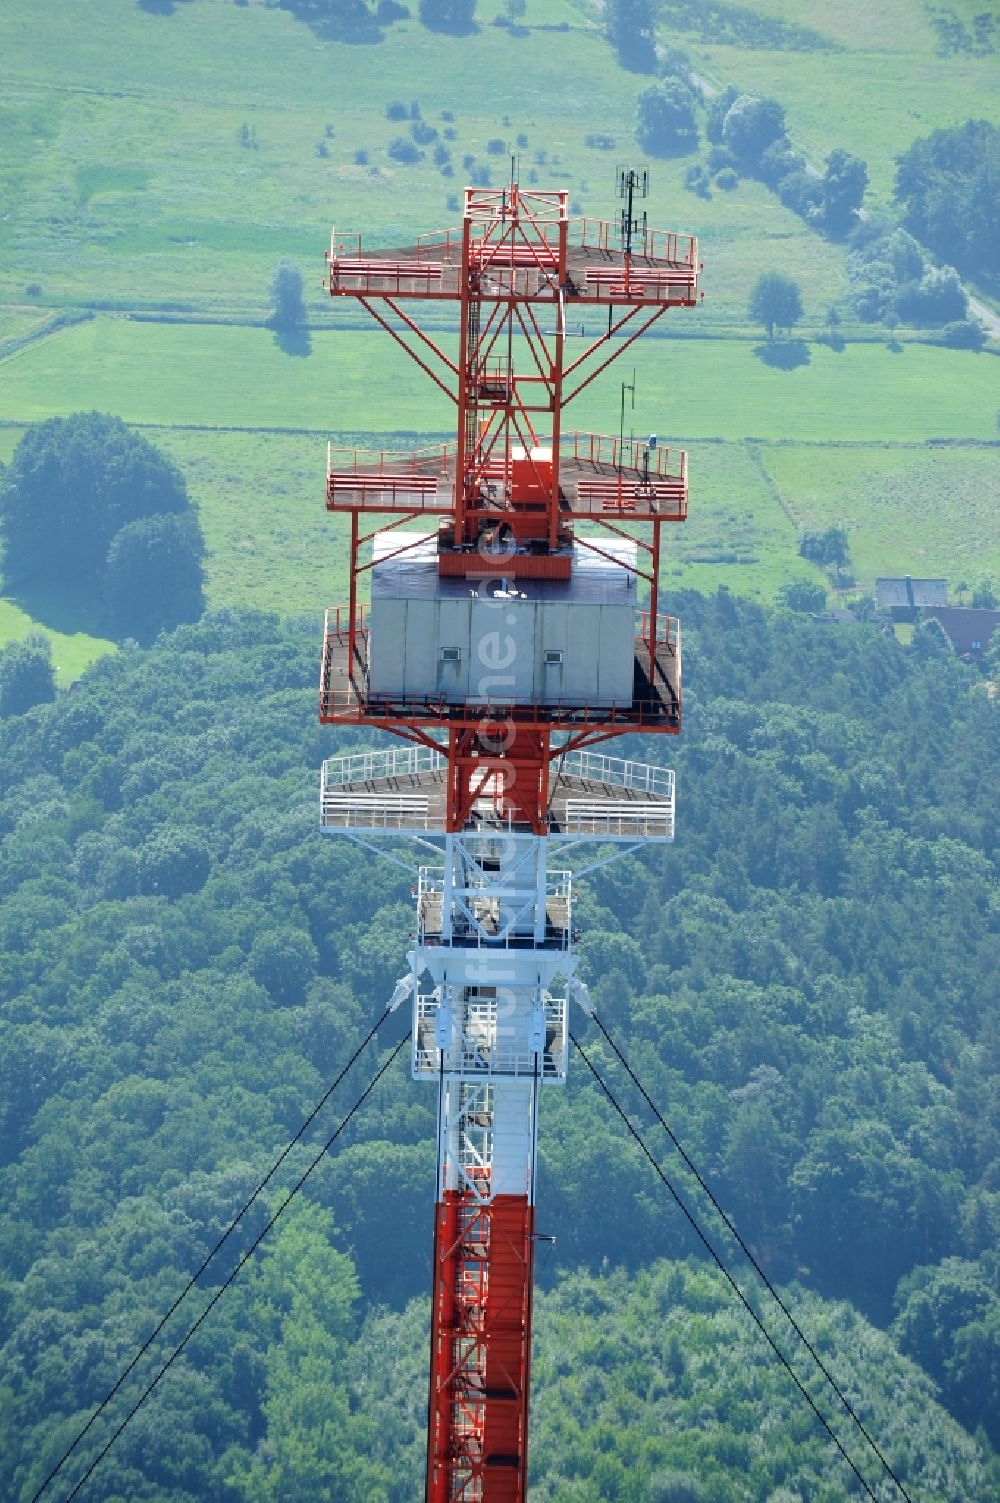 Dannenberg von oben - Funkturm Umsetzer Dannenberg bei Höhbeck im Bundesland Niedersachsen